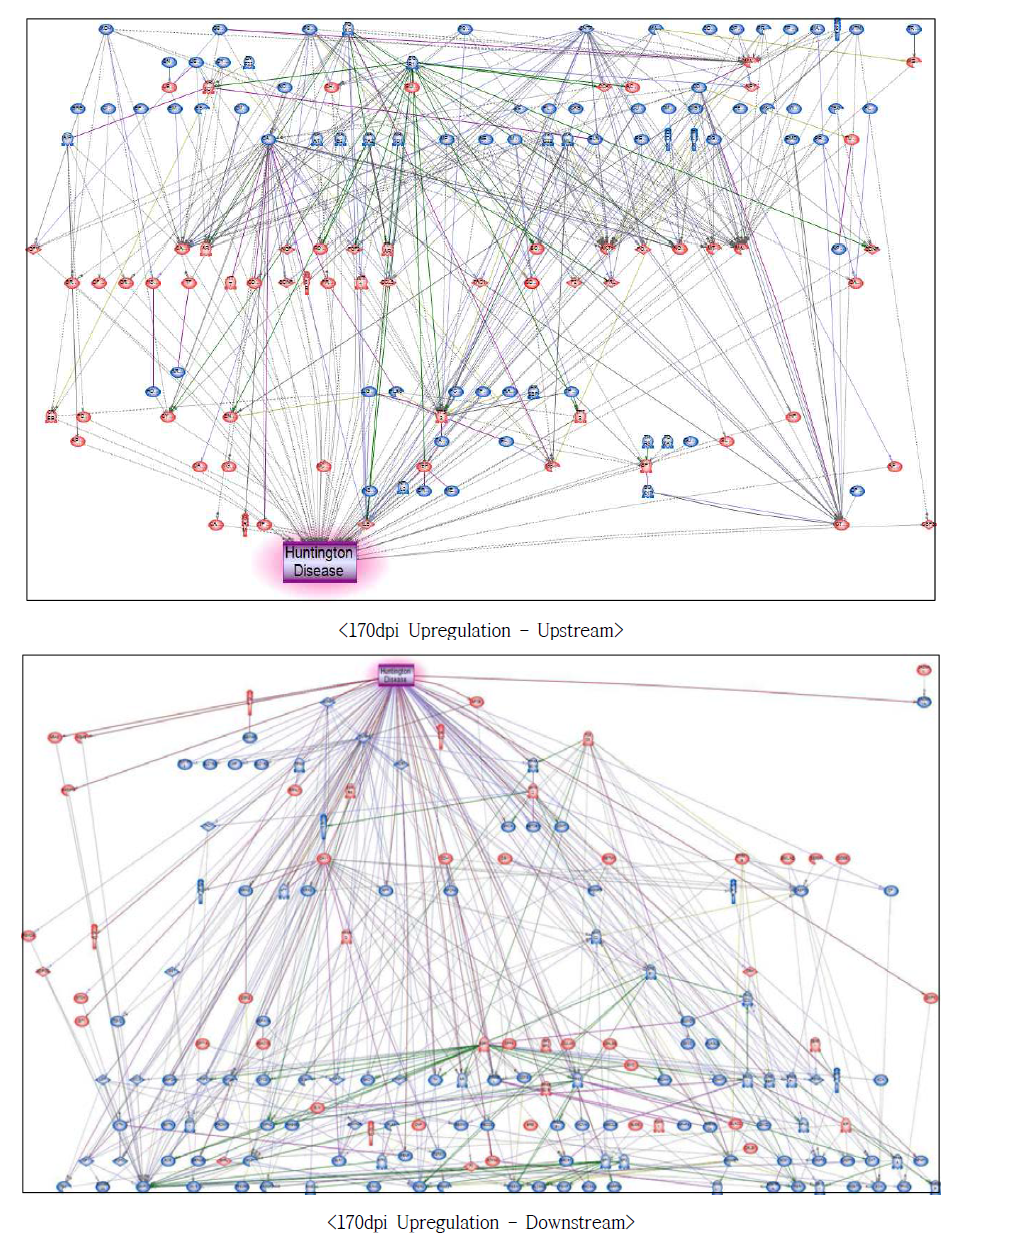 170dpi 과발현 유전자에서의 헌팅턴병에 대한 네트워크 구축